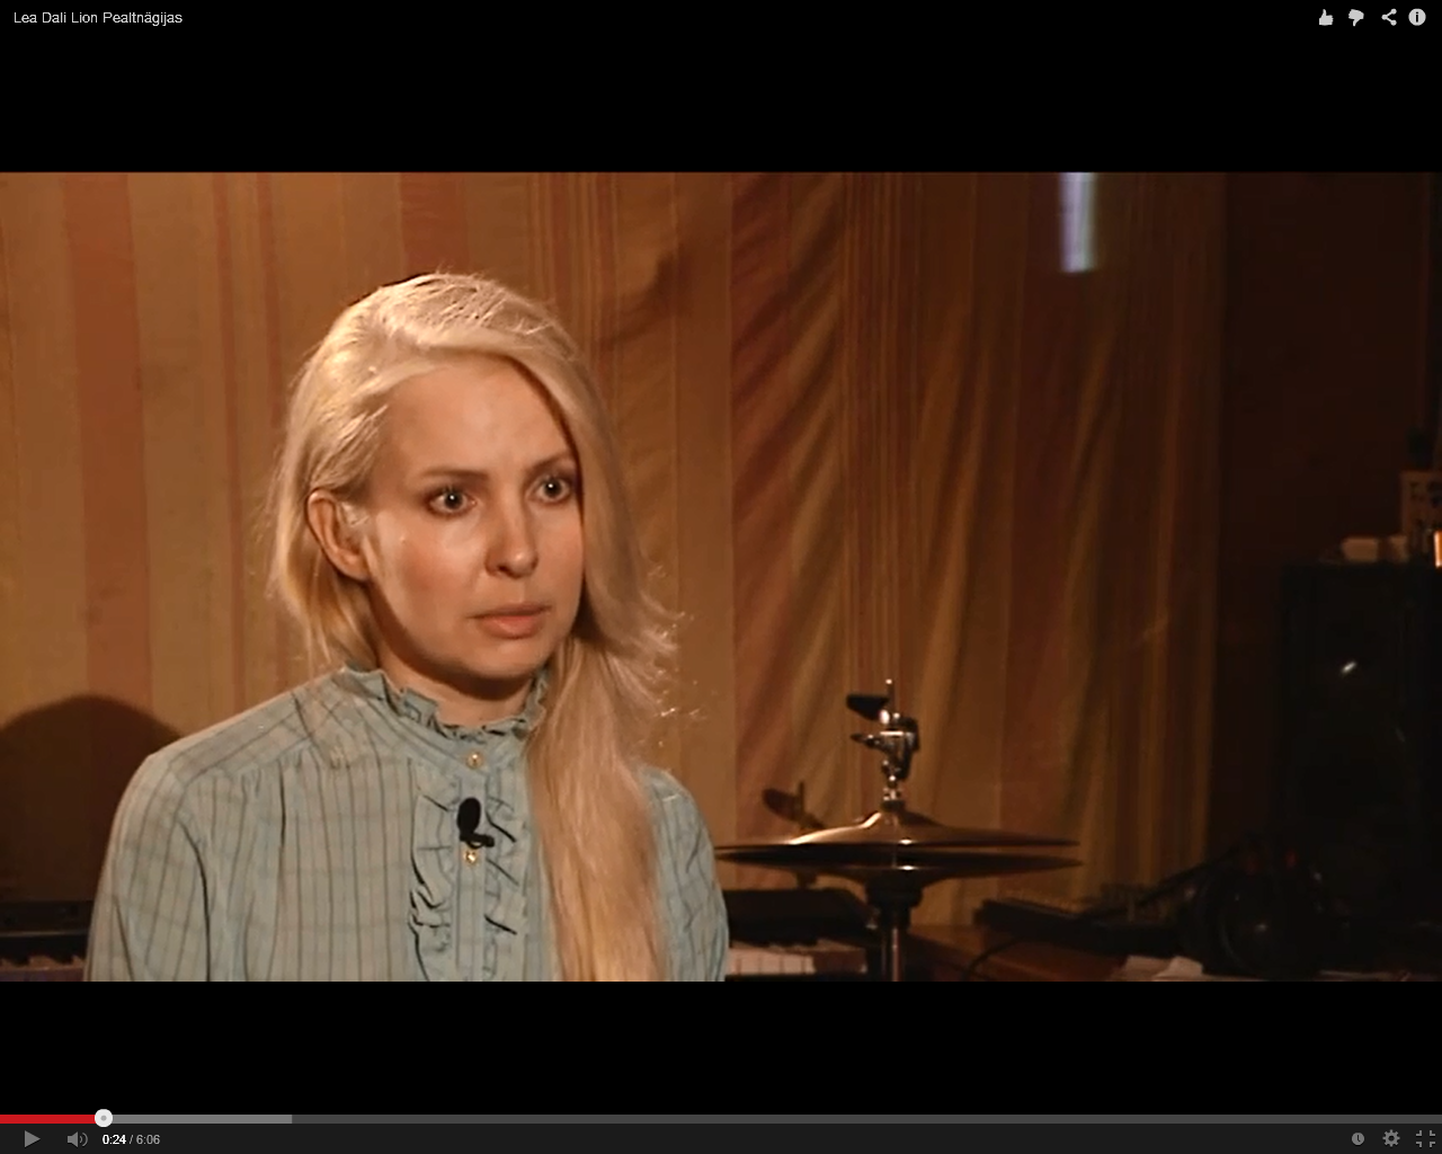 Piret Järvis oli Lea Dali Lioni intervjuu ajal hirmust kange